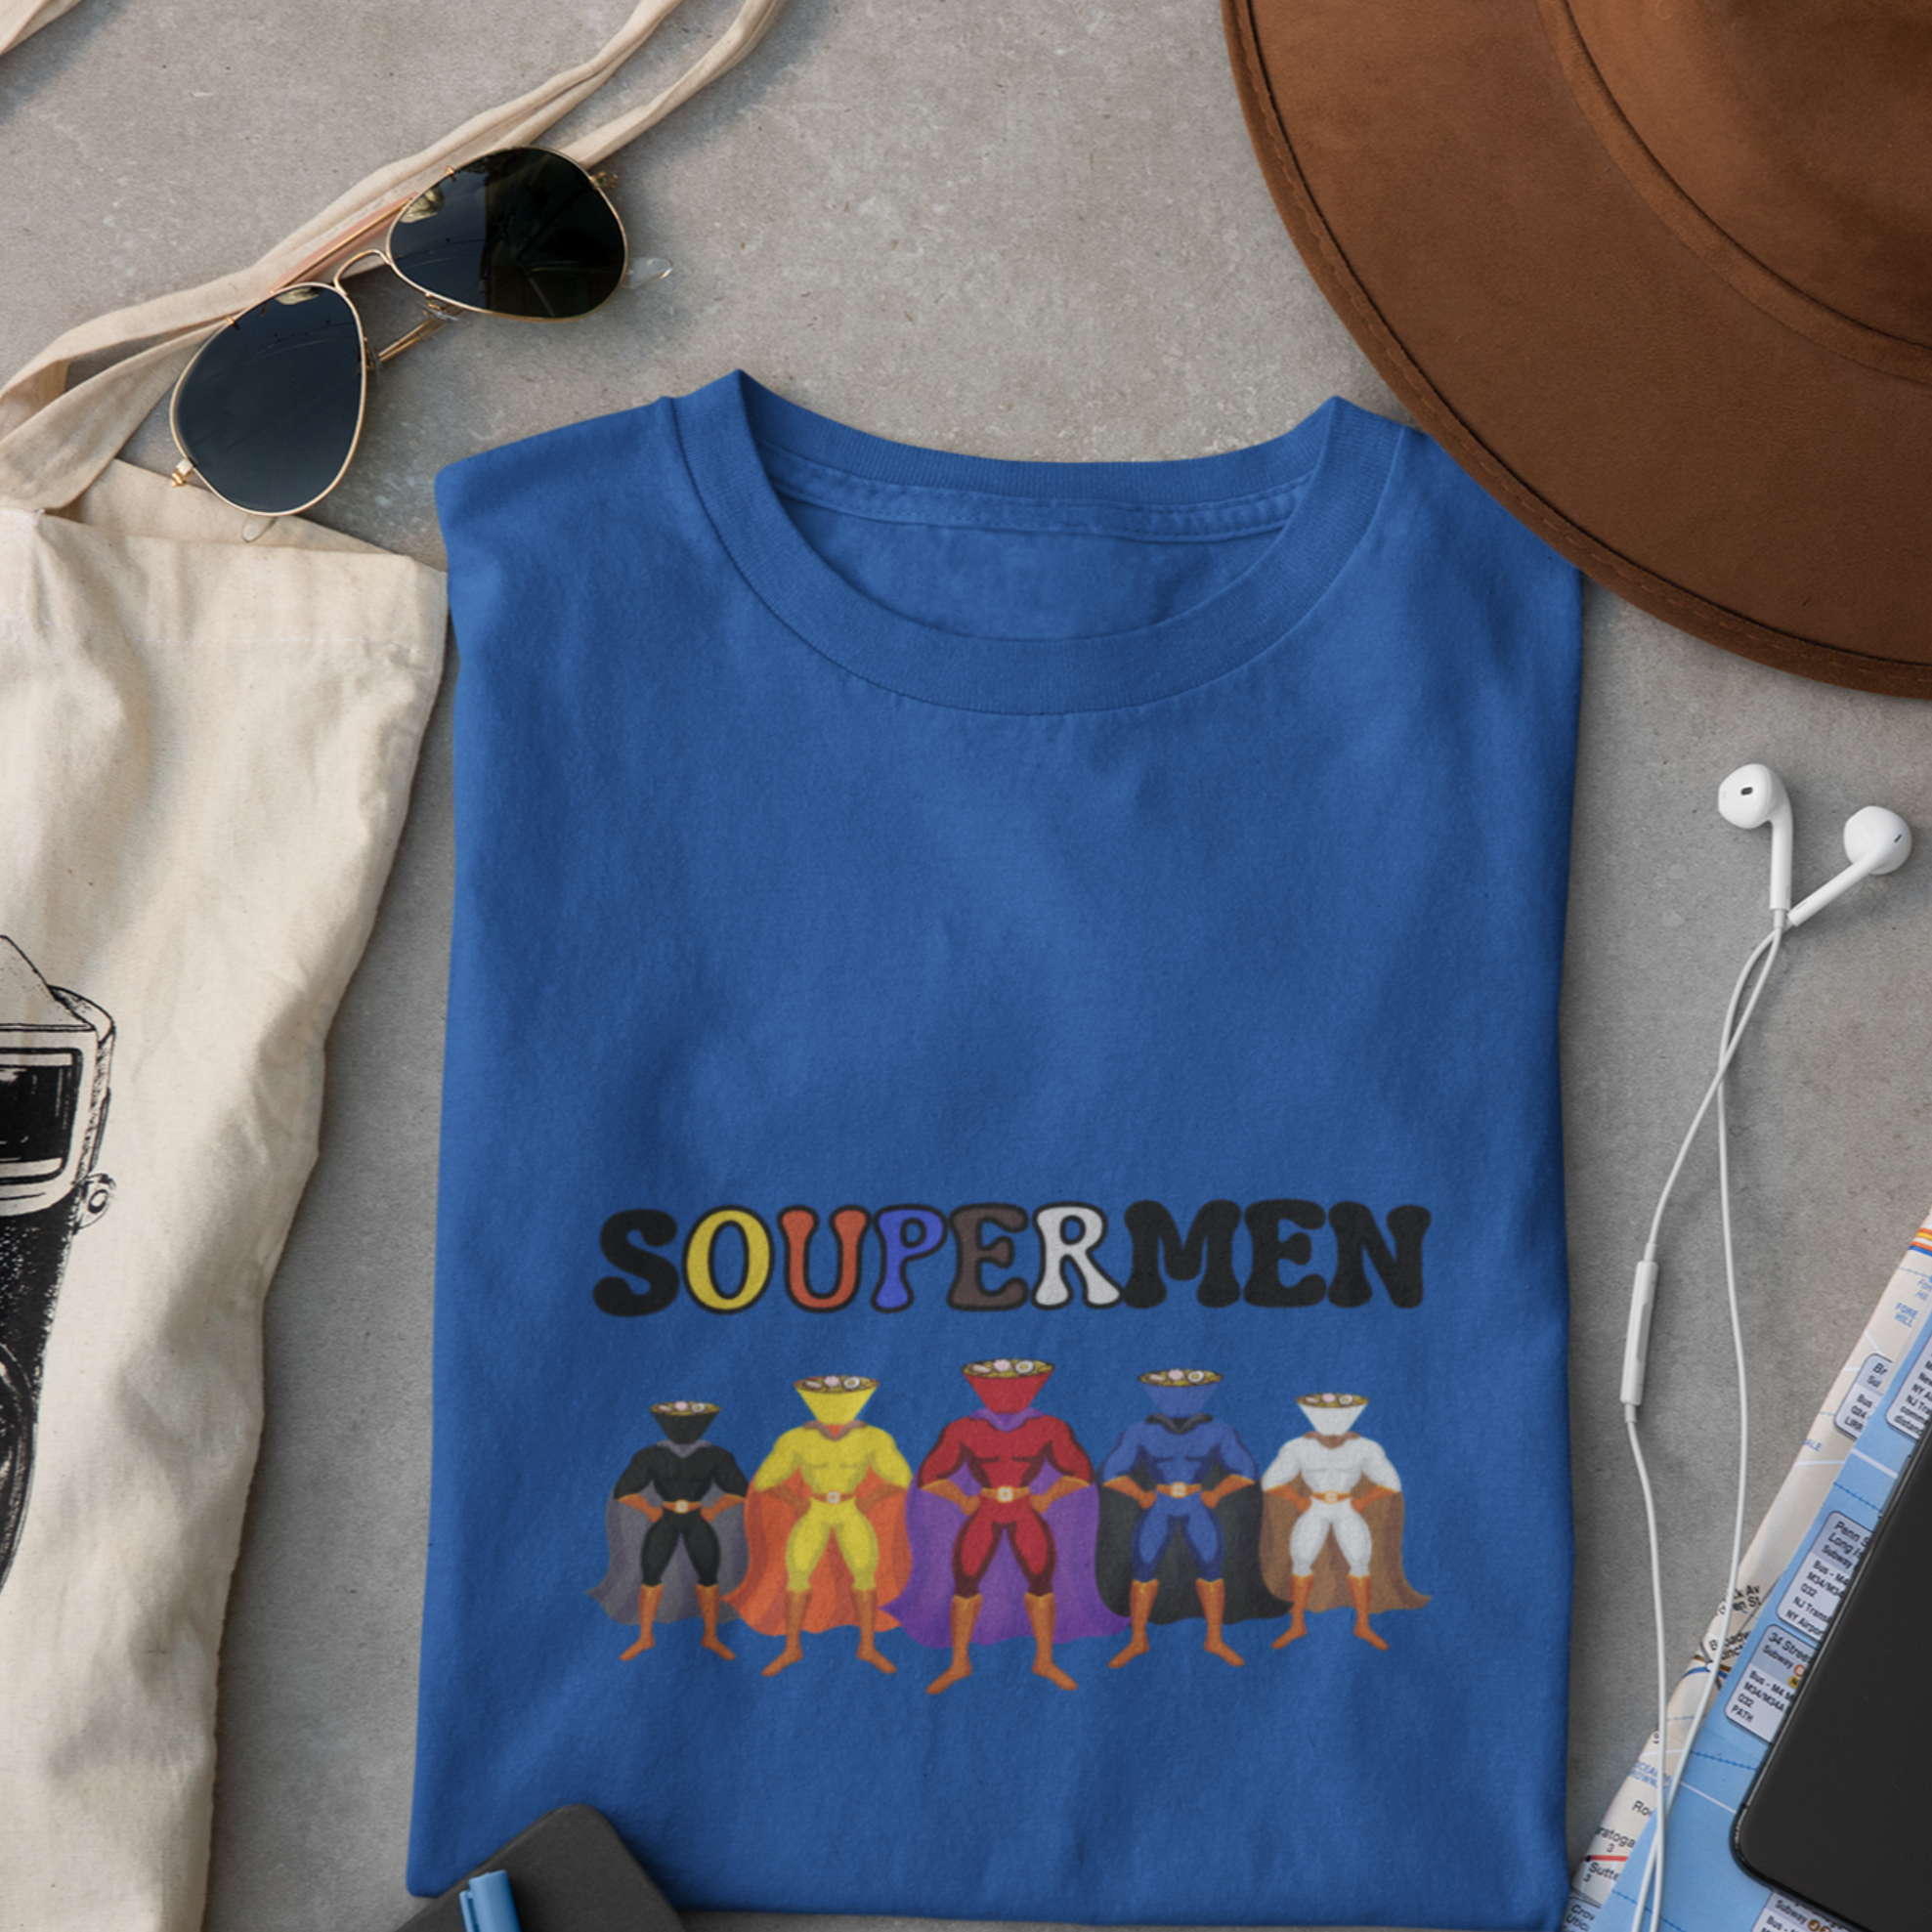 Ramen T-Shirt: Soupermen - Japanese Foodie Shirt with Ramen Art of Superheroes in Ramen Bowls